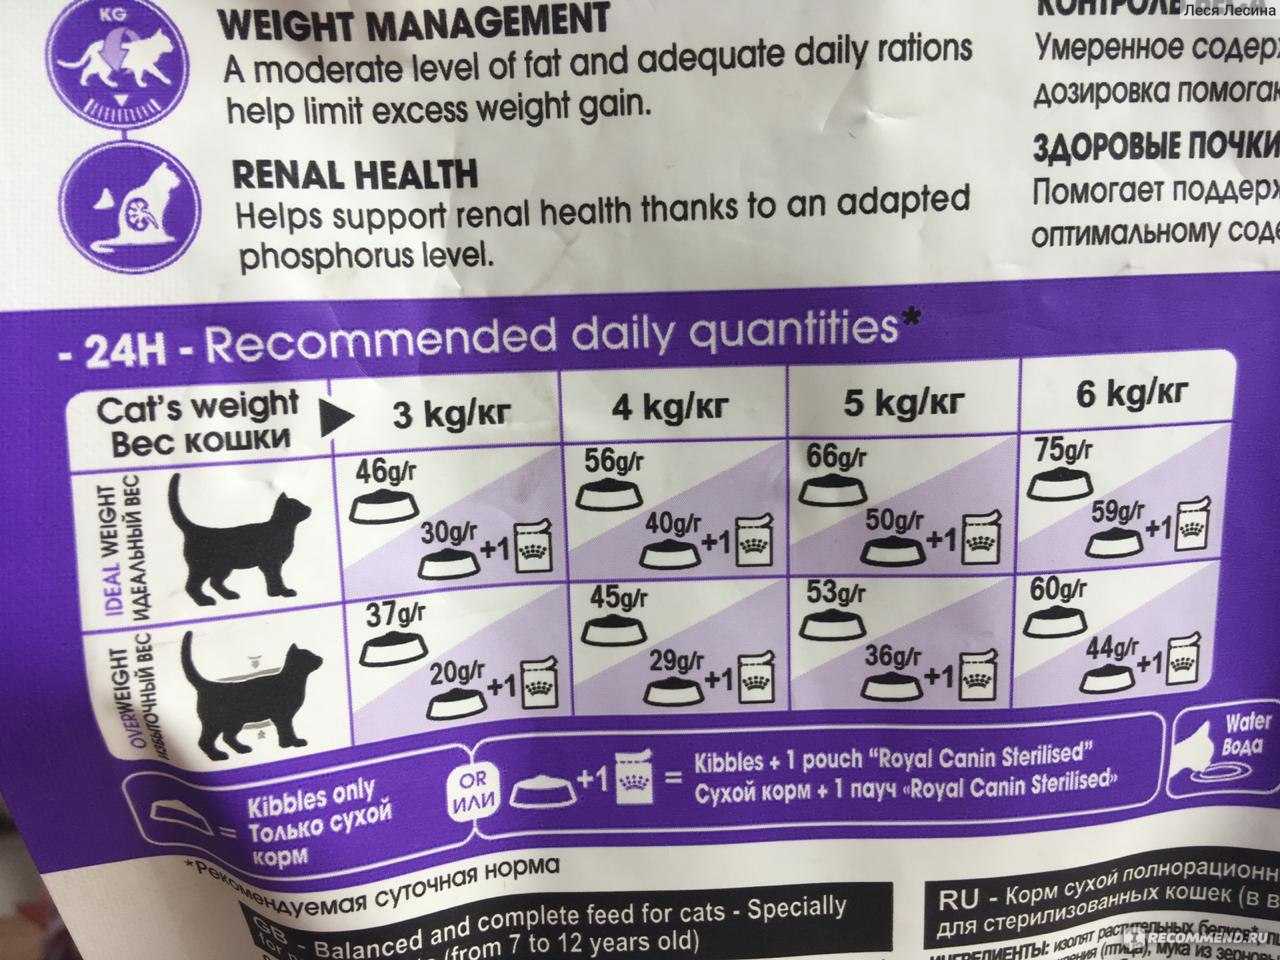 Вреден ли сухой корм для кошек, вред и польза готовых кормов по мнению ветеринаров, рекомендации по кормлению